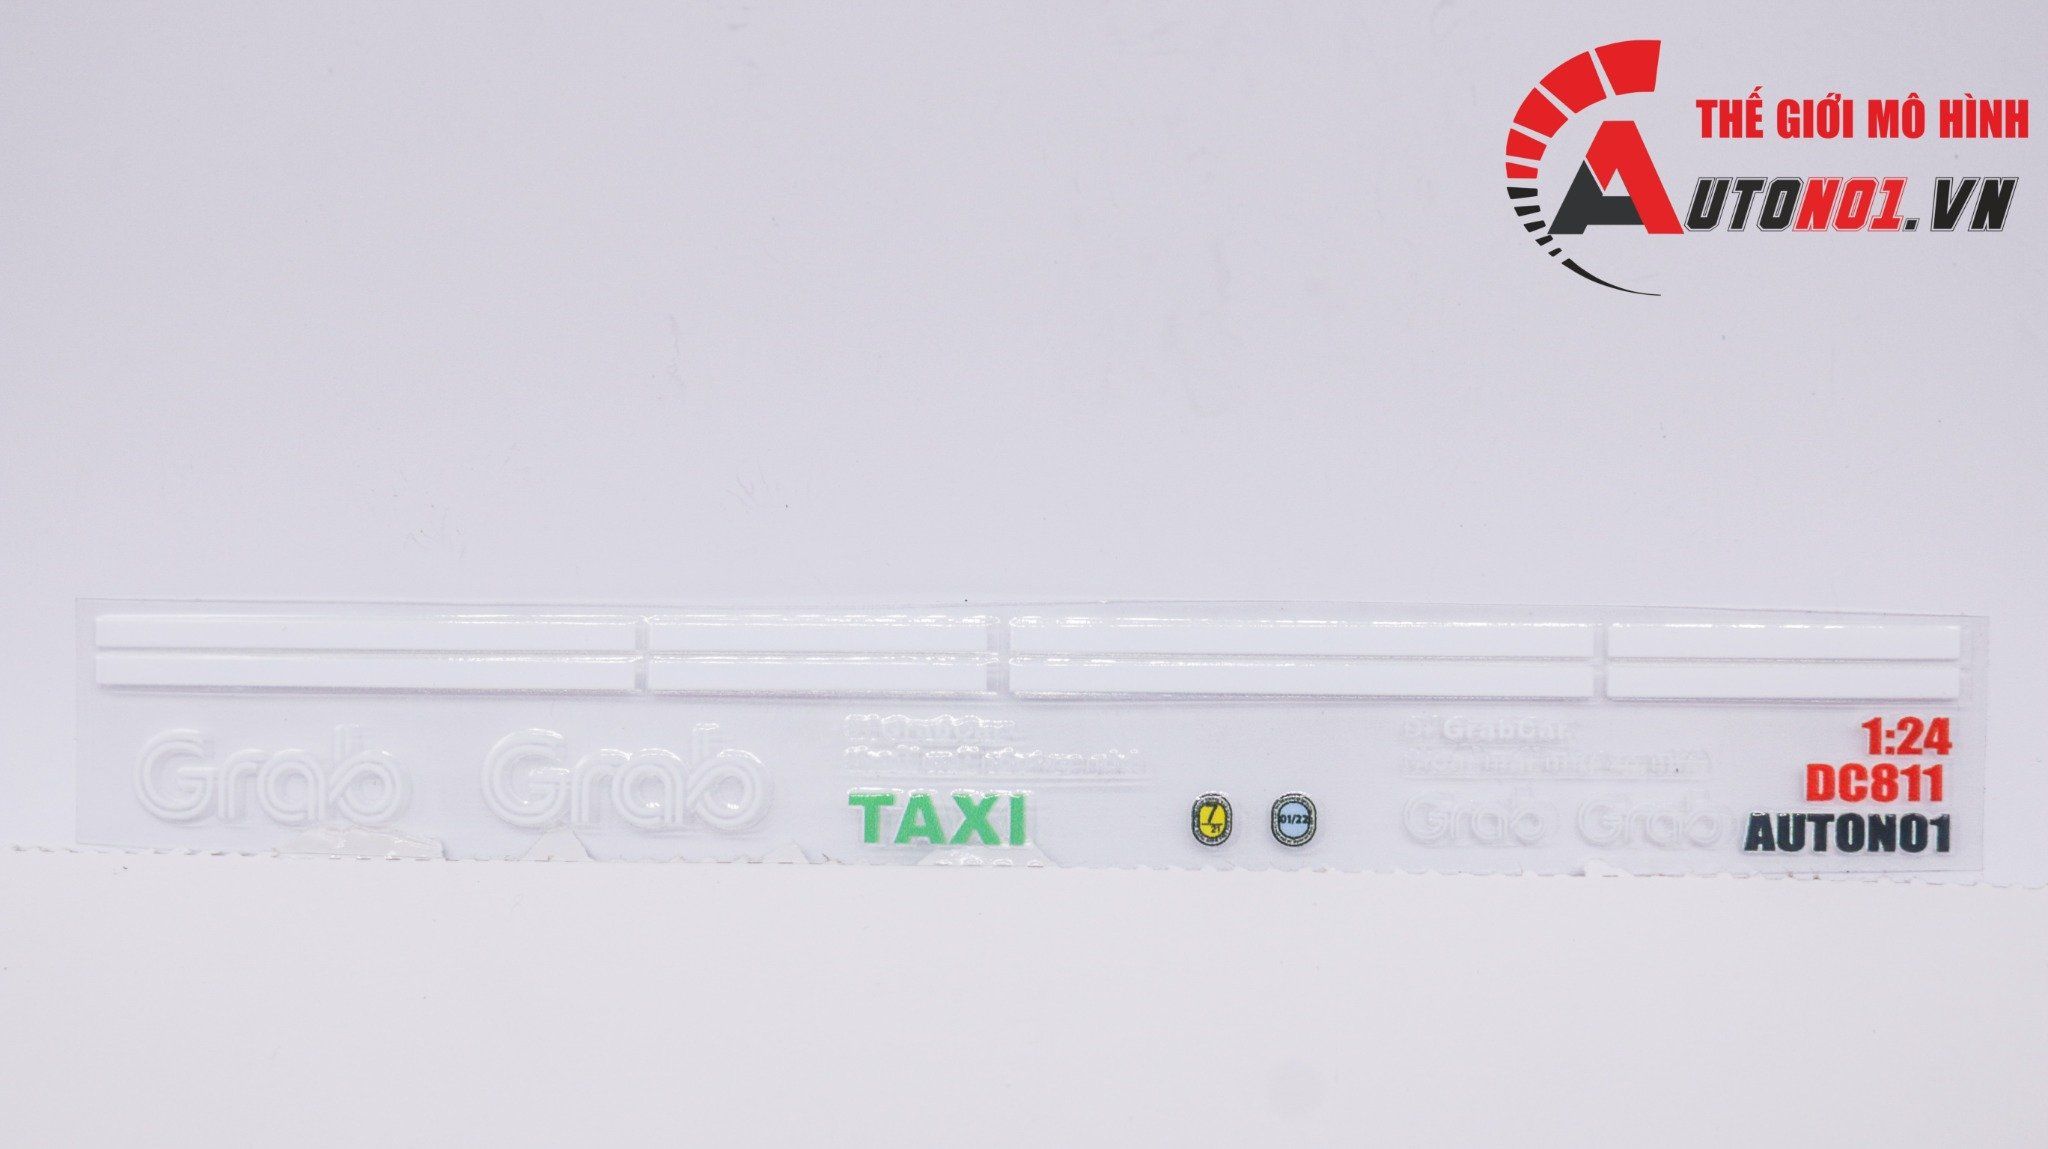  Decal UV độ xe dịch vụ - thương mại Grab taxi cho xe mọi tỉ lệ có keo sẵn lột dán DC811 